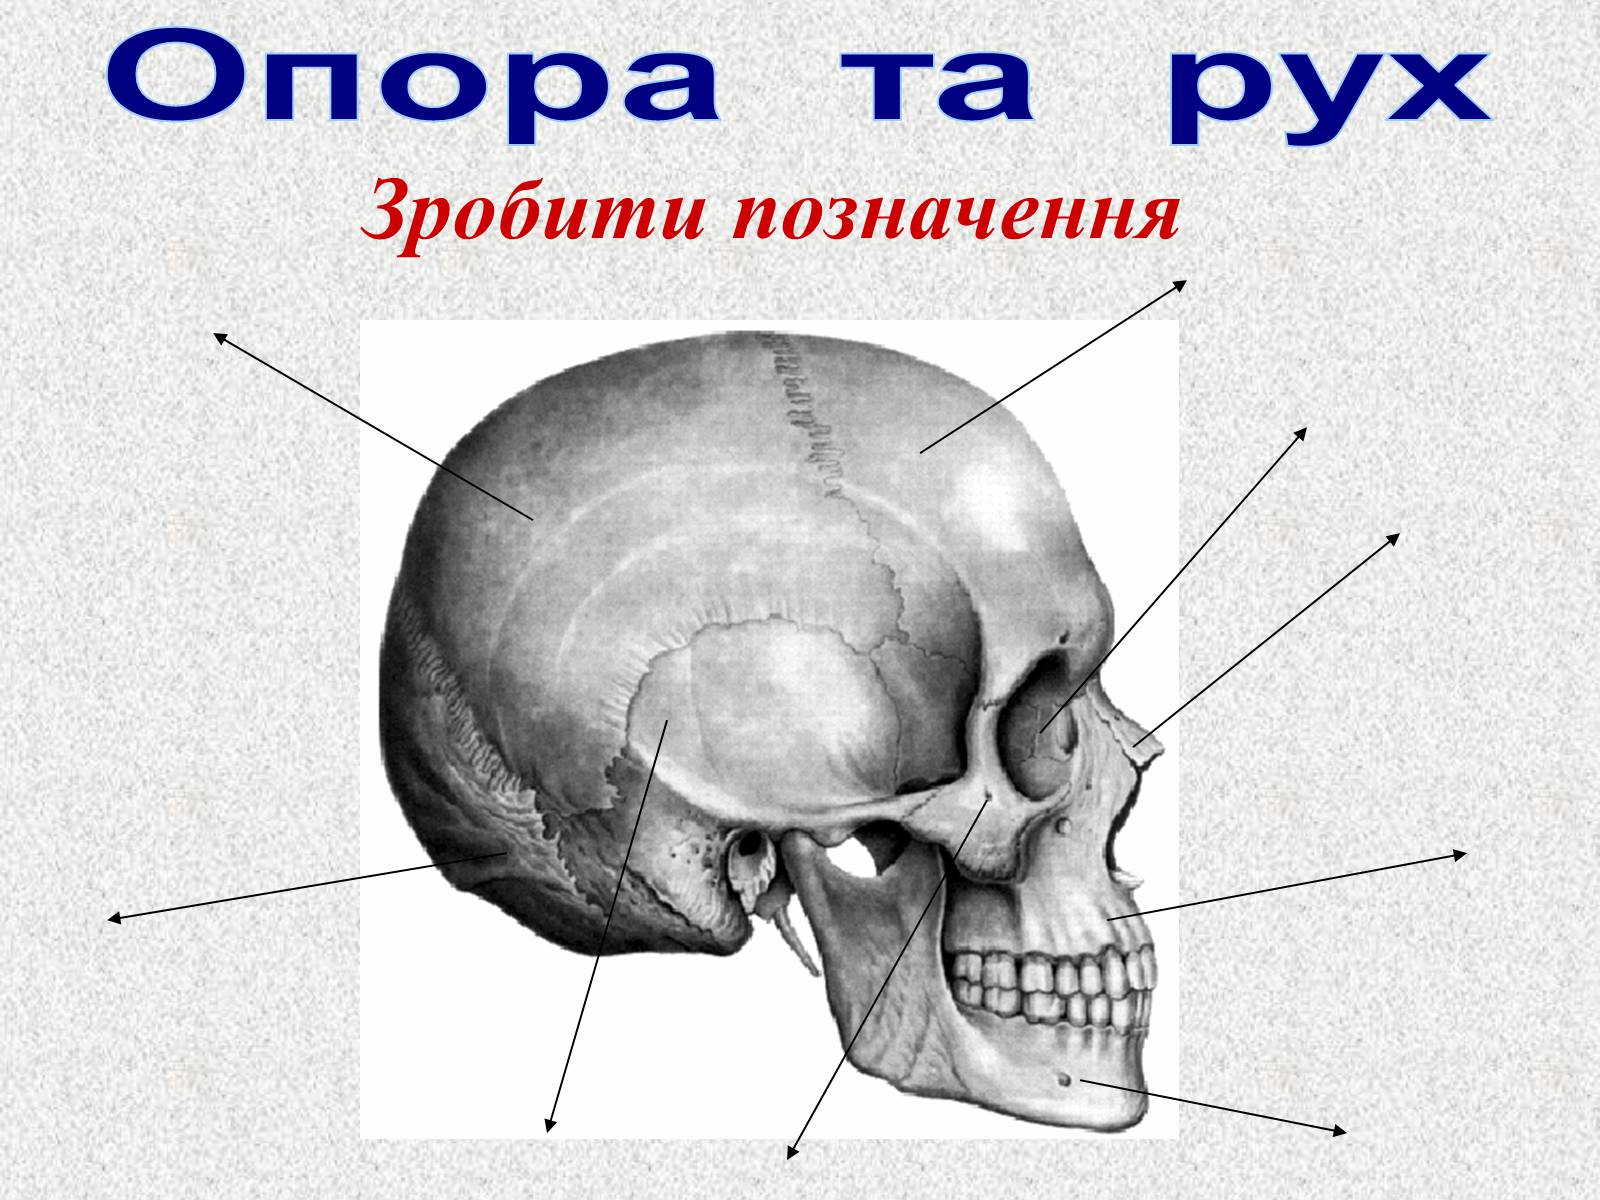 кости лицевого черепа строение картинки